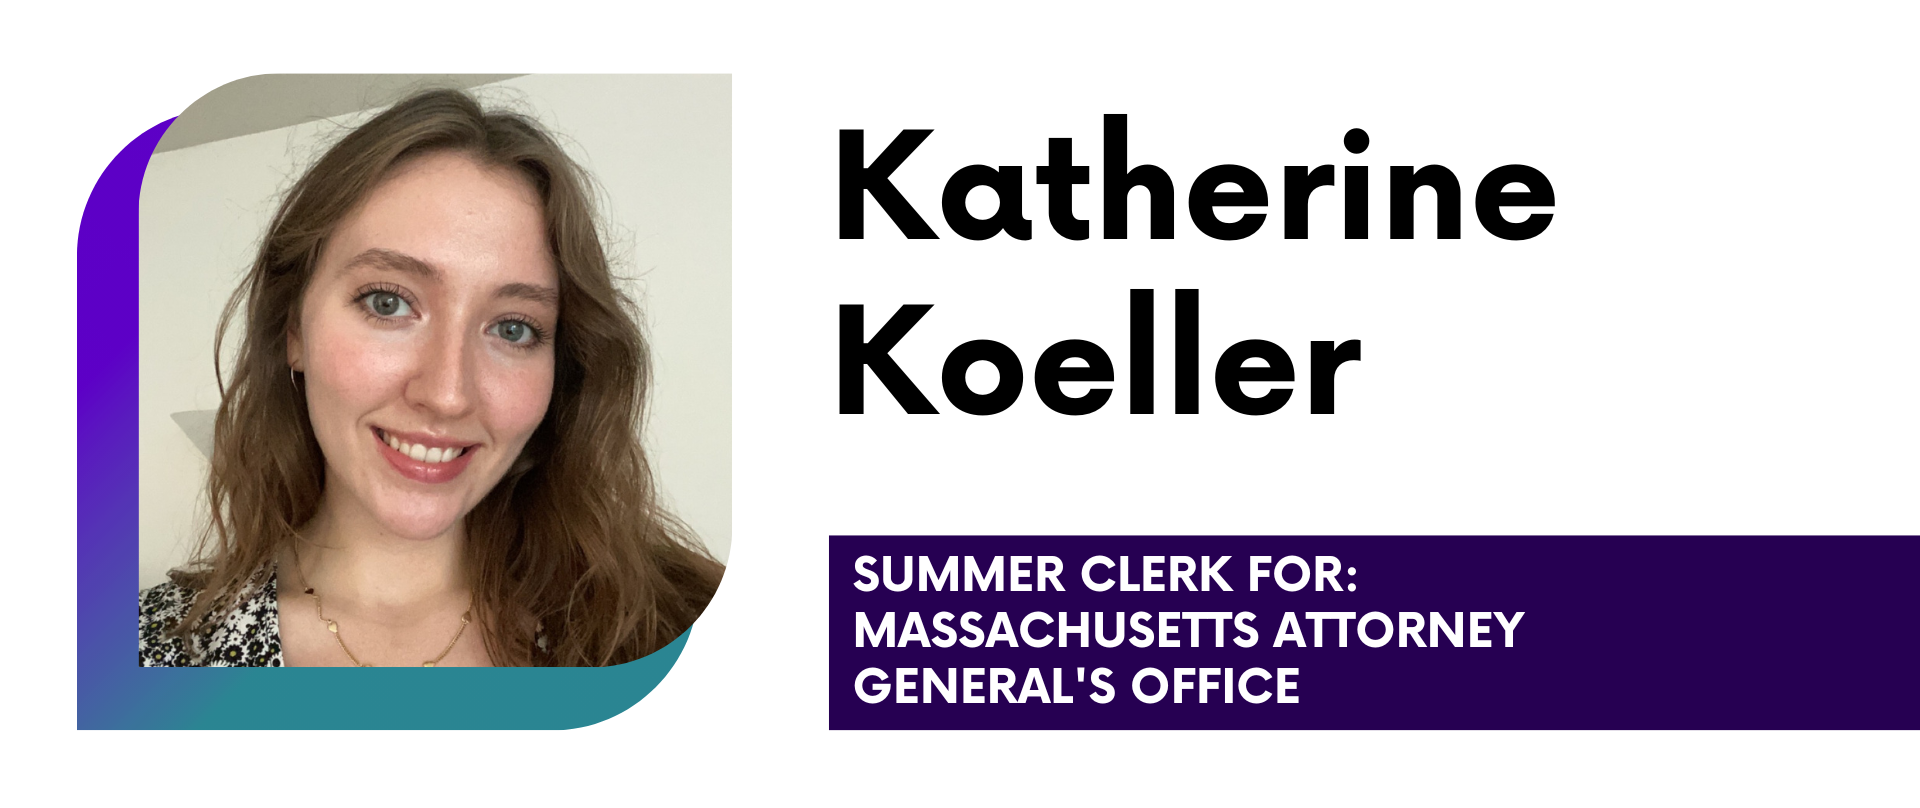 Katherine Koeller Summer Clerk for: Massachusetts Attorney General's Office